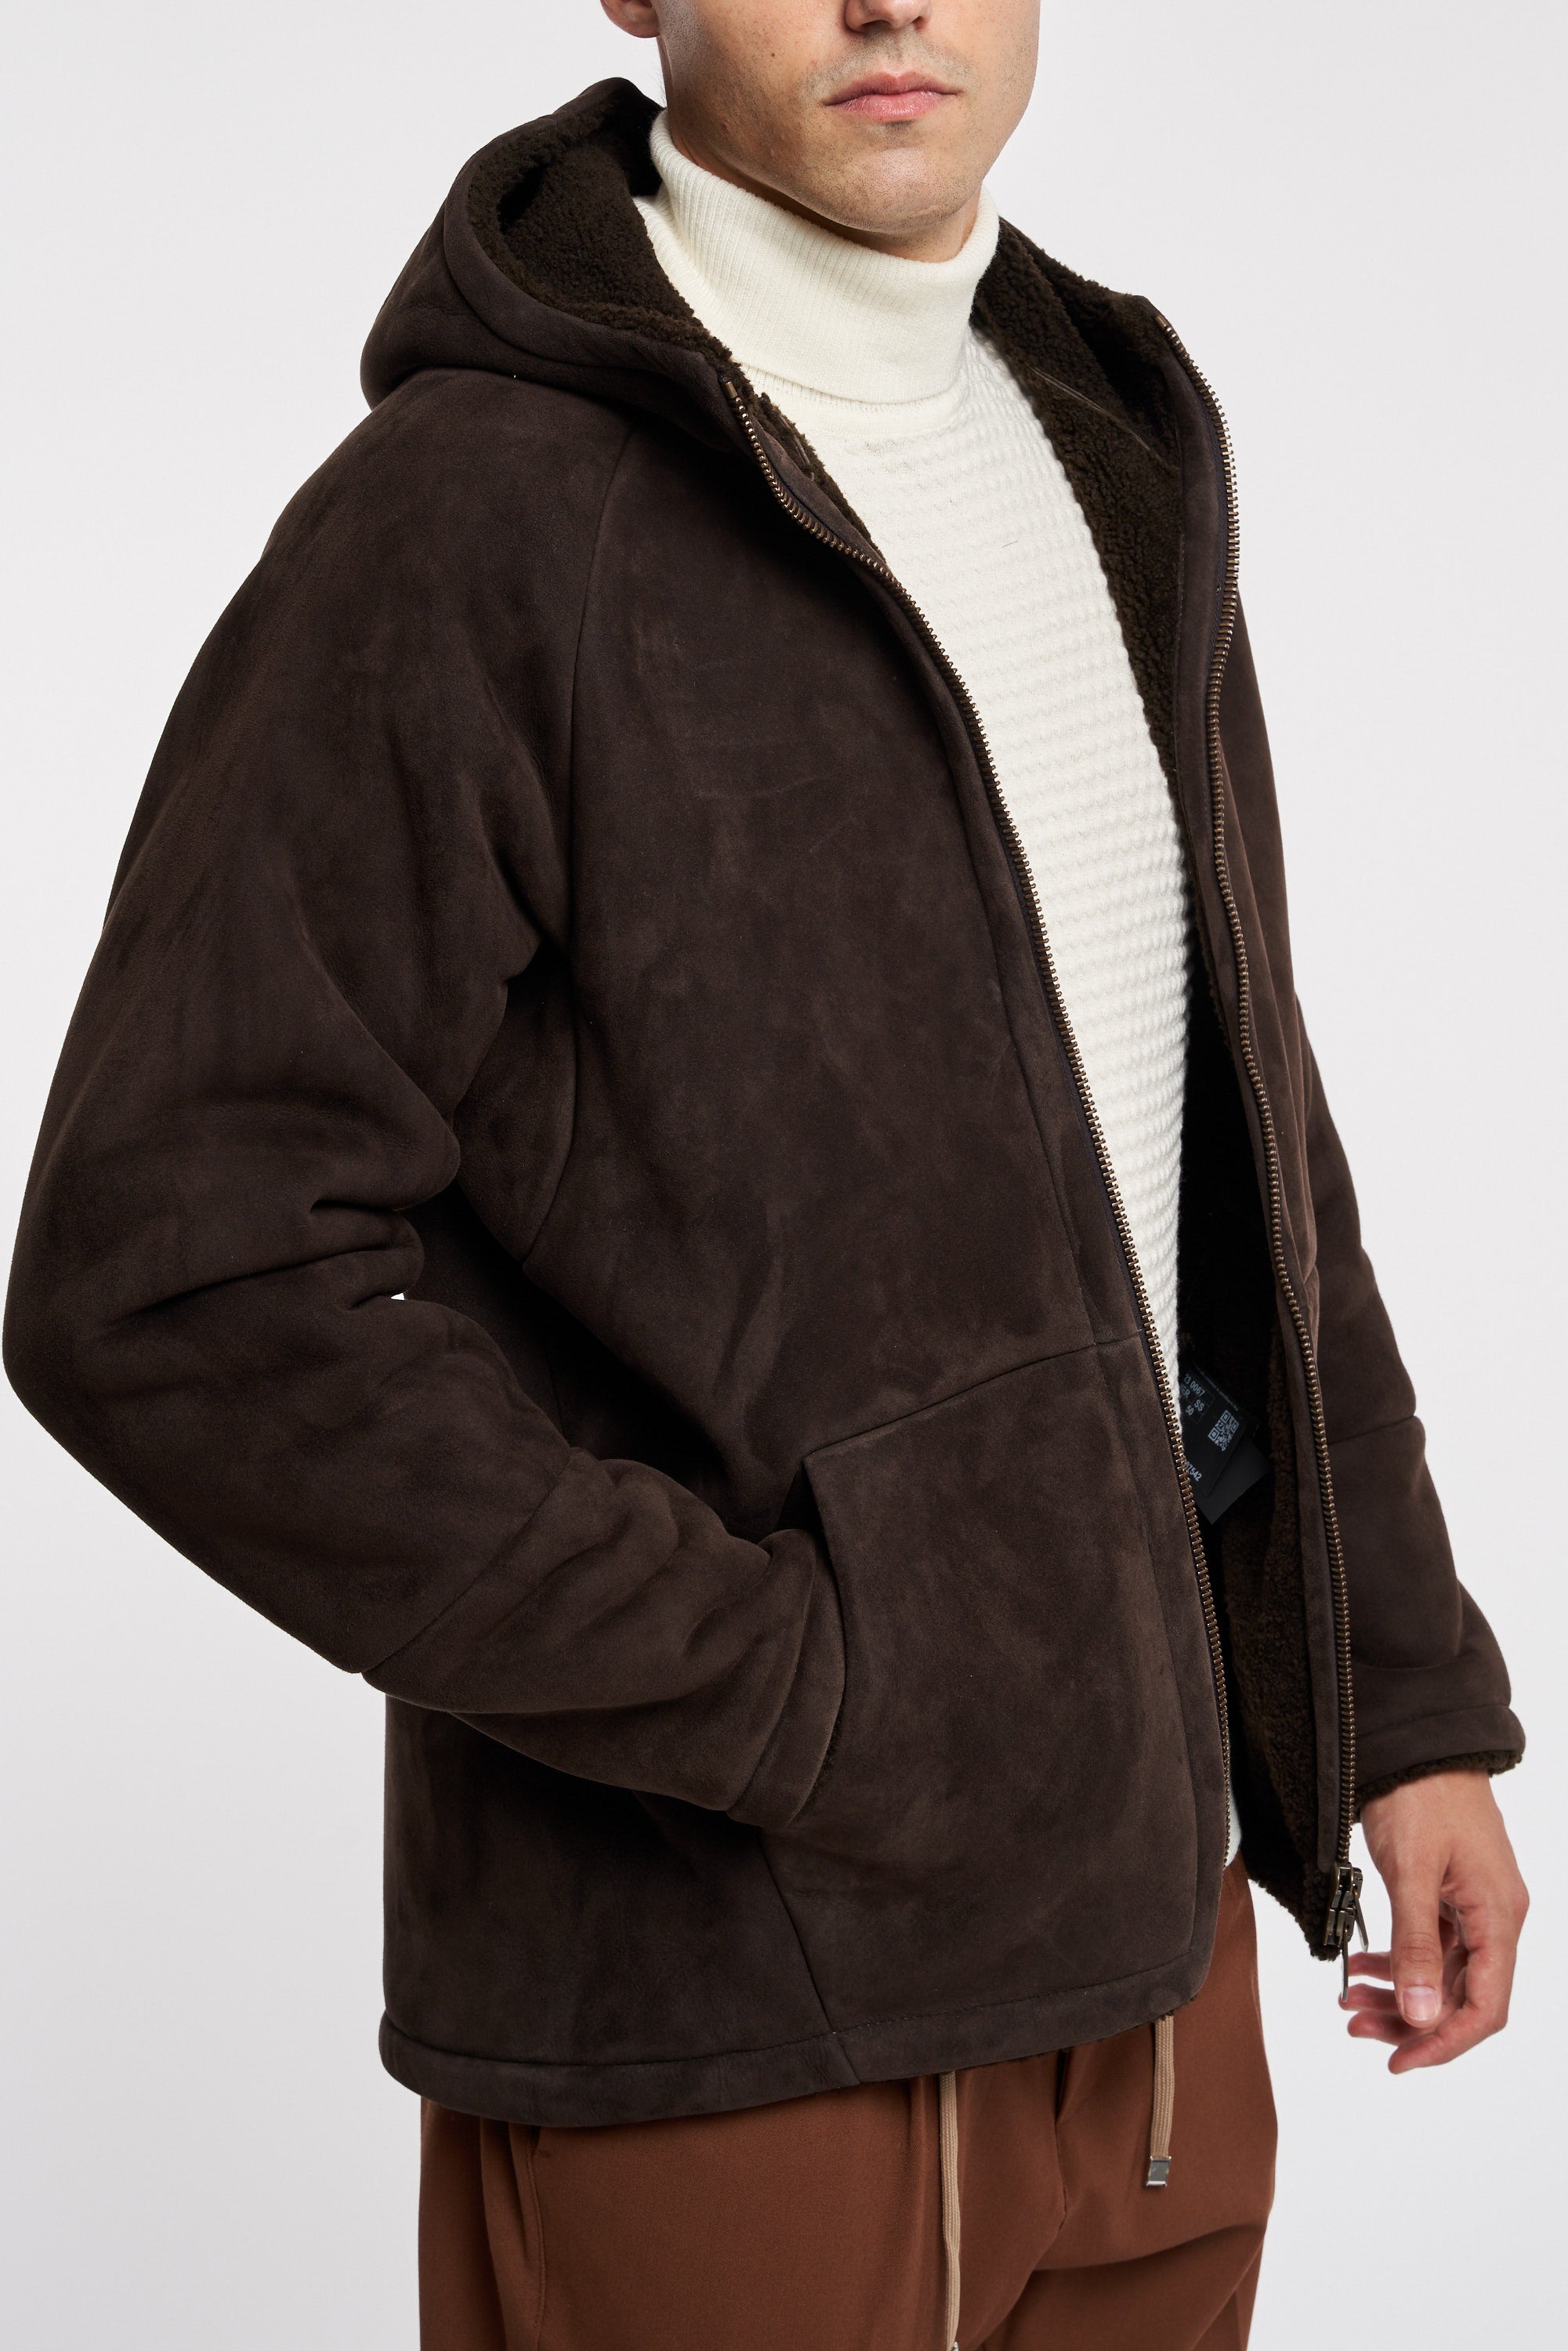 Salvatore Santoro Brown Leather Jacket 100% Lh Darkbrown Uomo